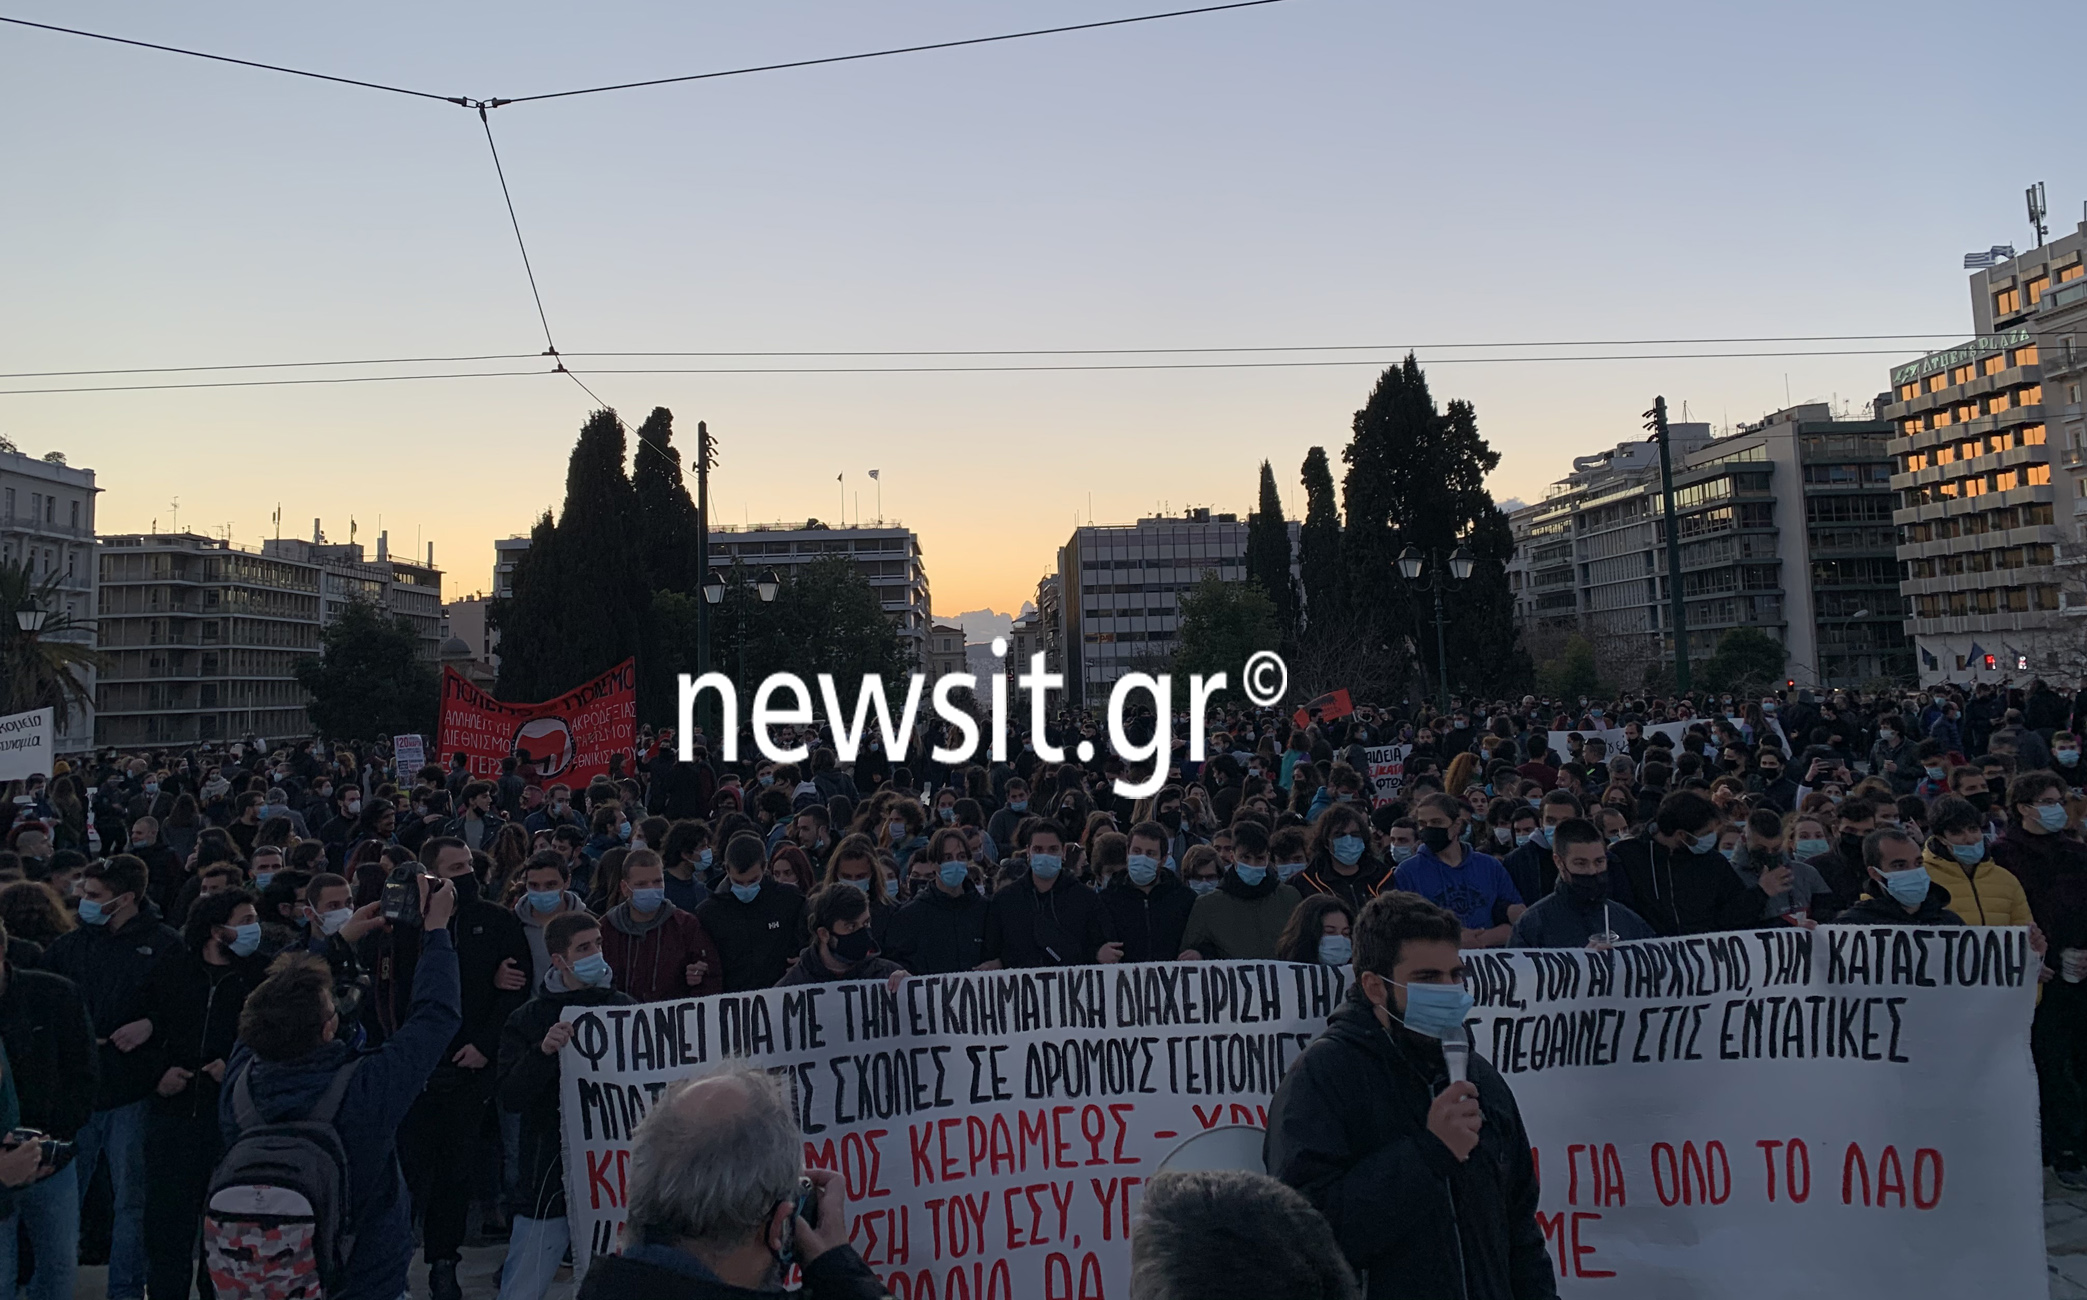 Μεγάλη συγκέντρωση των υγειονομικών και άλλων συνδικάτων στο κέντρο της Αθήνας